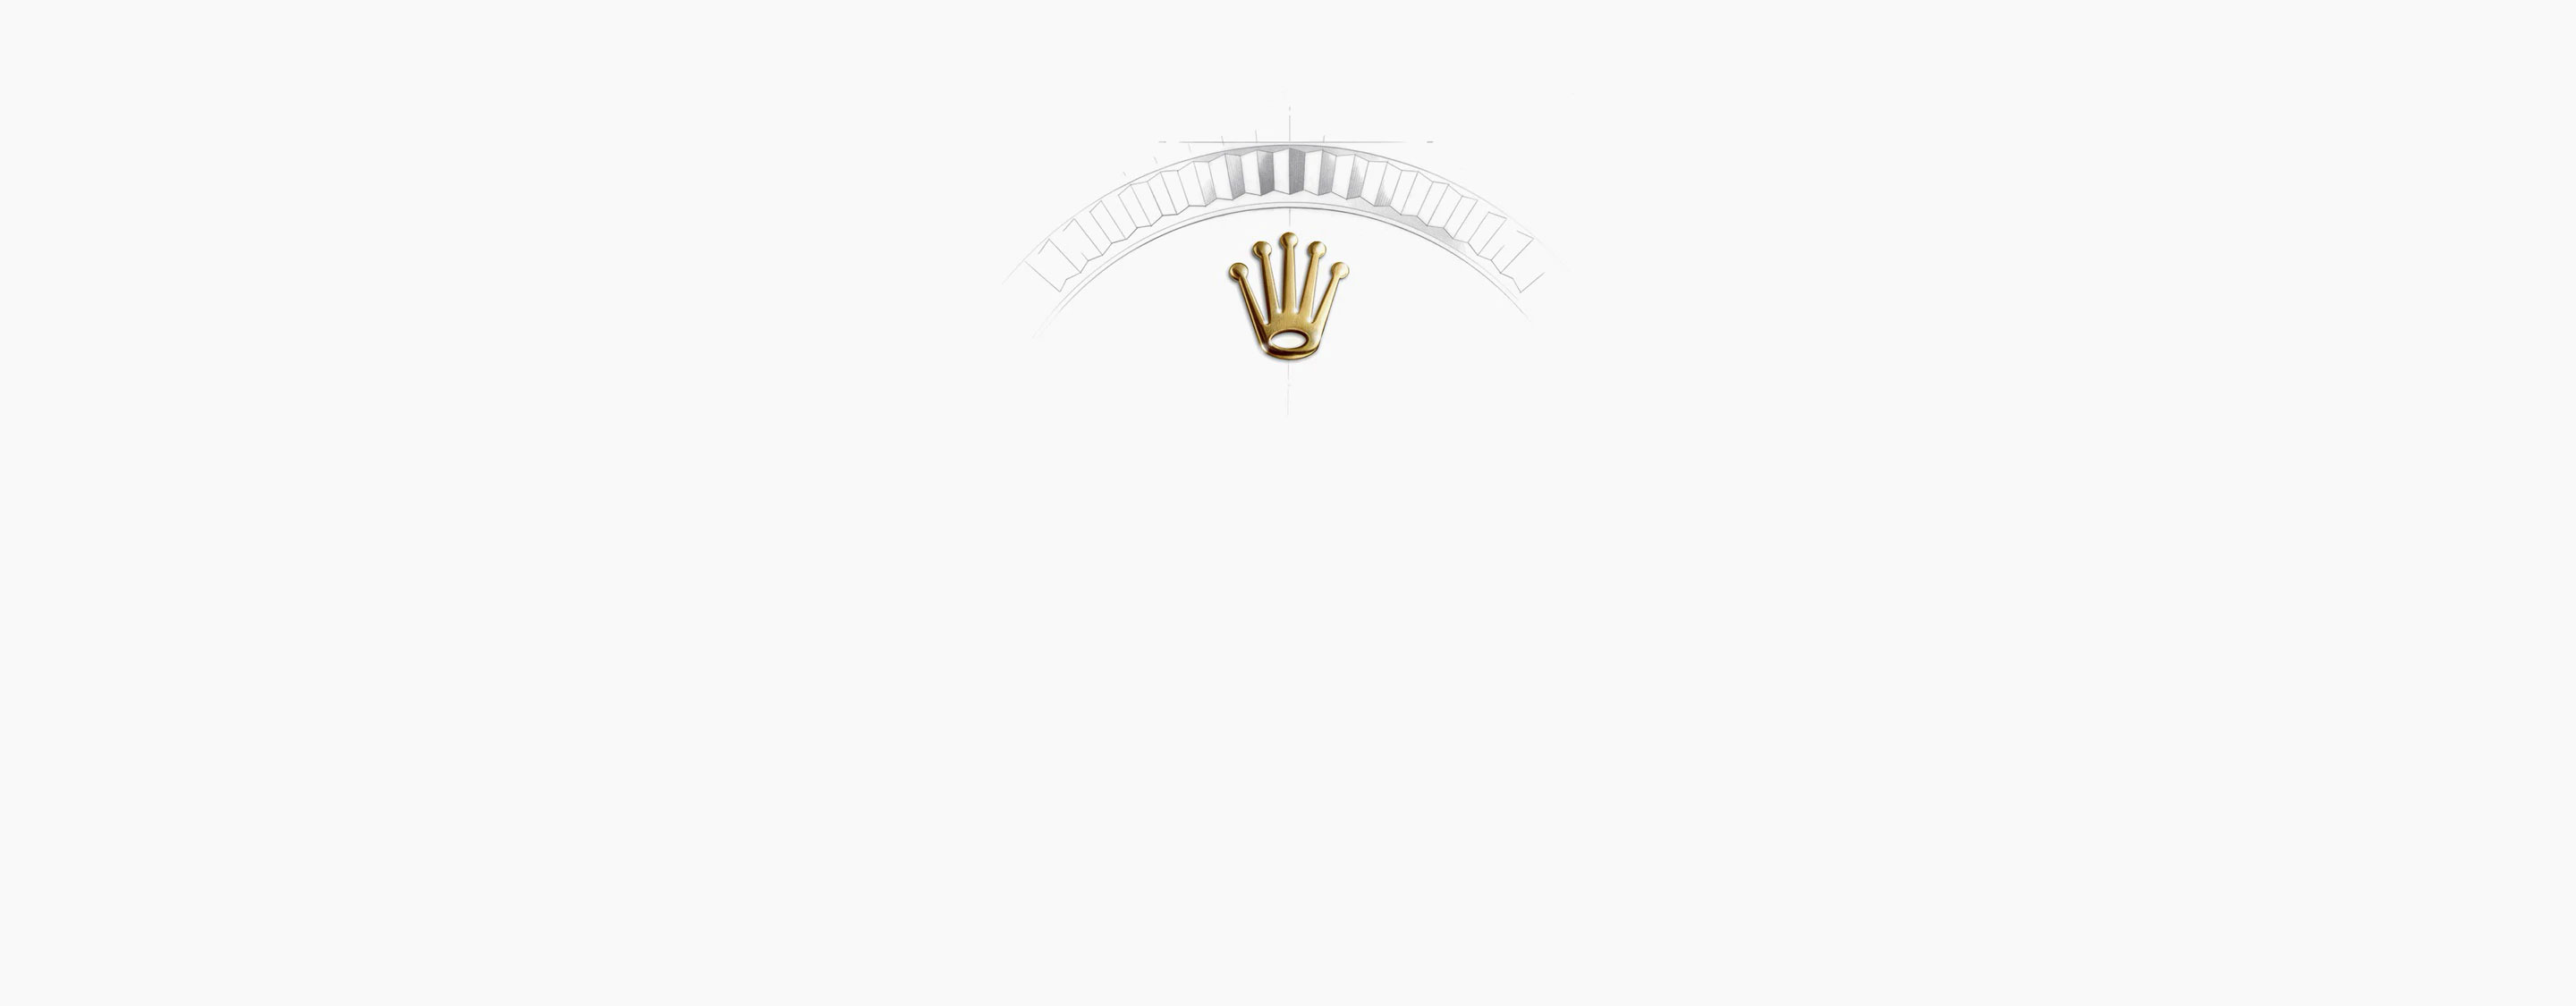 Corona Reloj Rolex Submariner Date en Joyería Grau